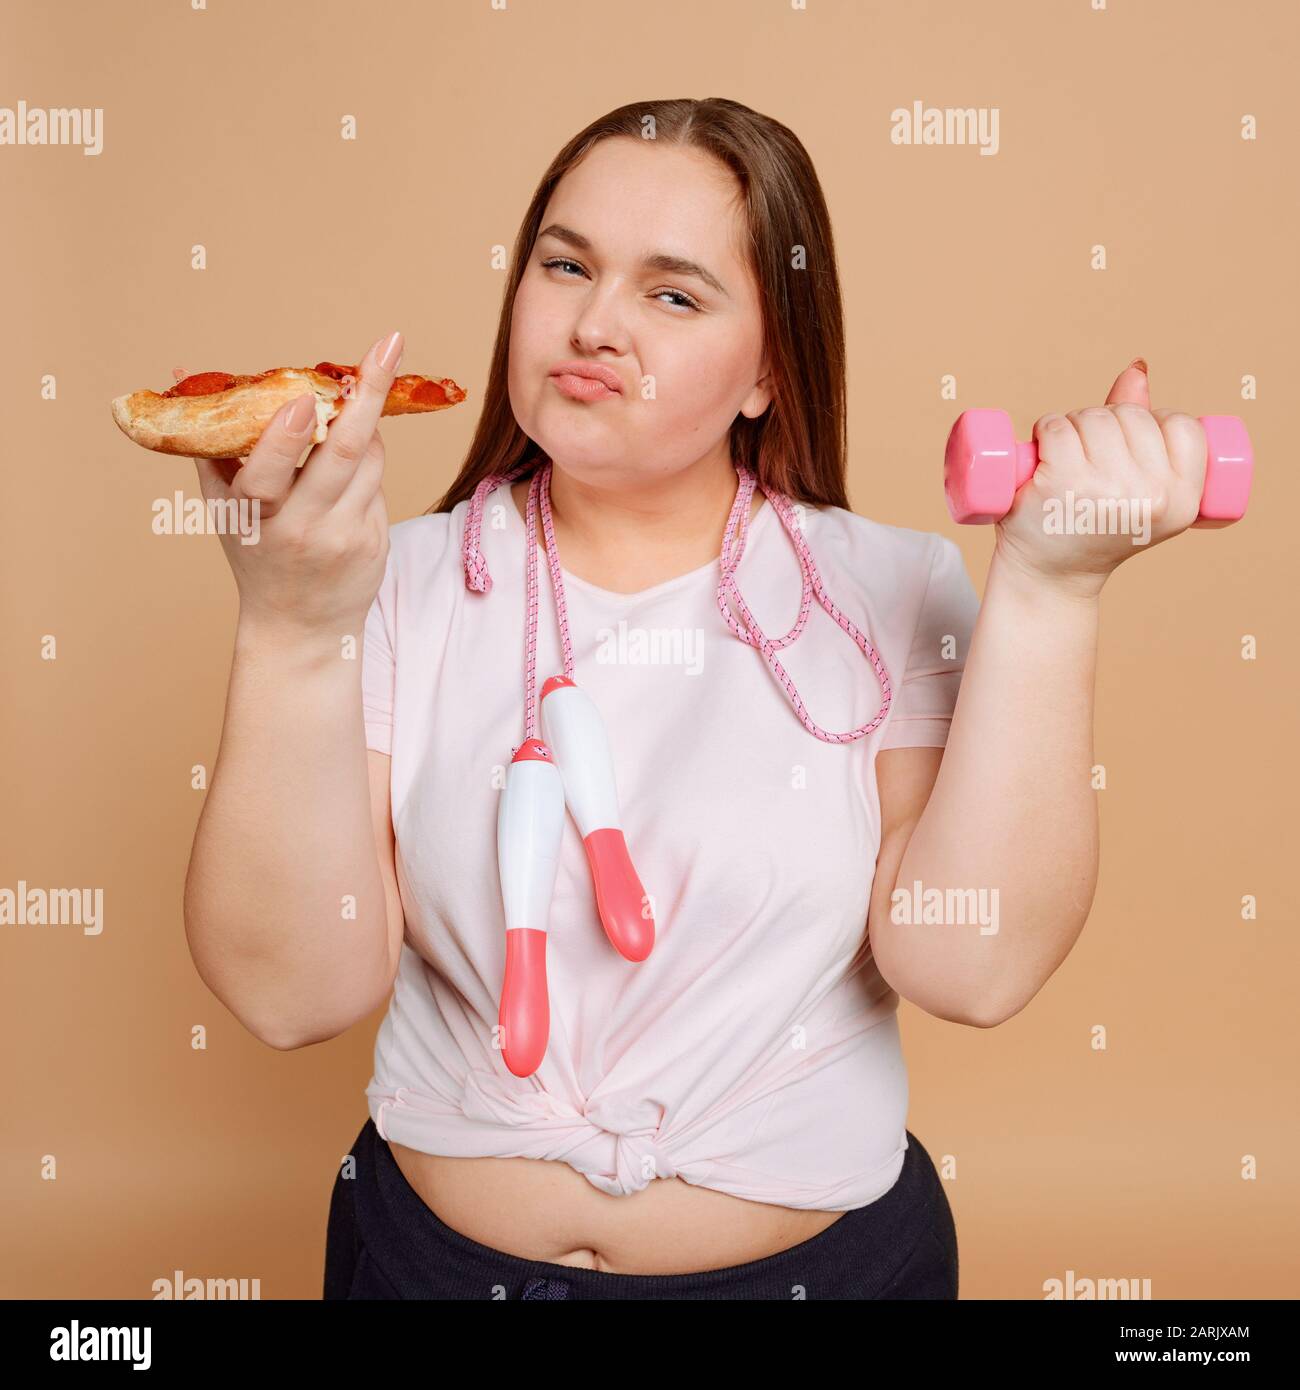 Übergewichtige Frau, die mit Überessen zu kämpfen hat. Fitness- und Diätkonzept Stockfoto